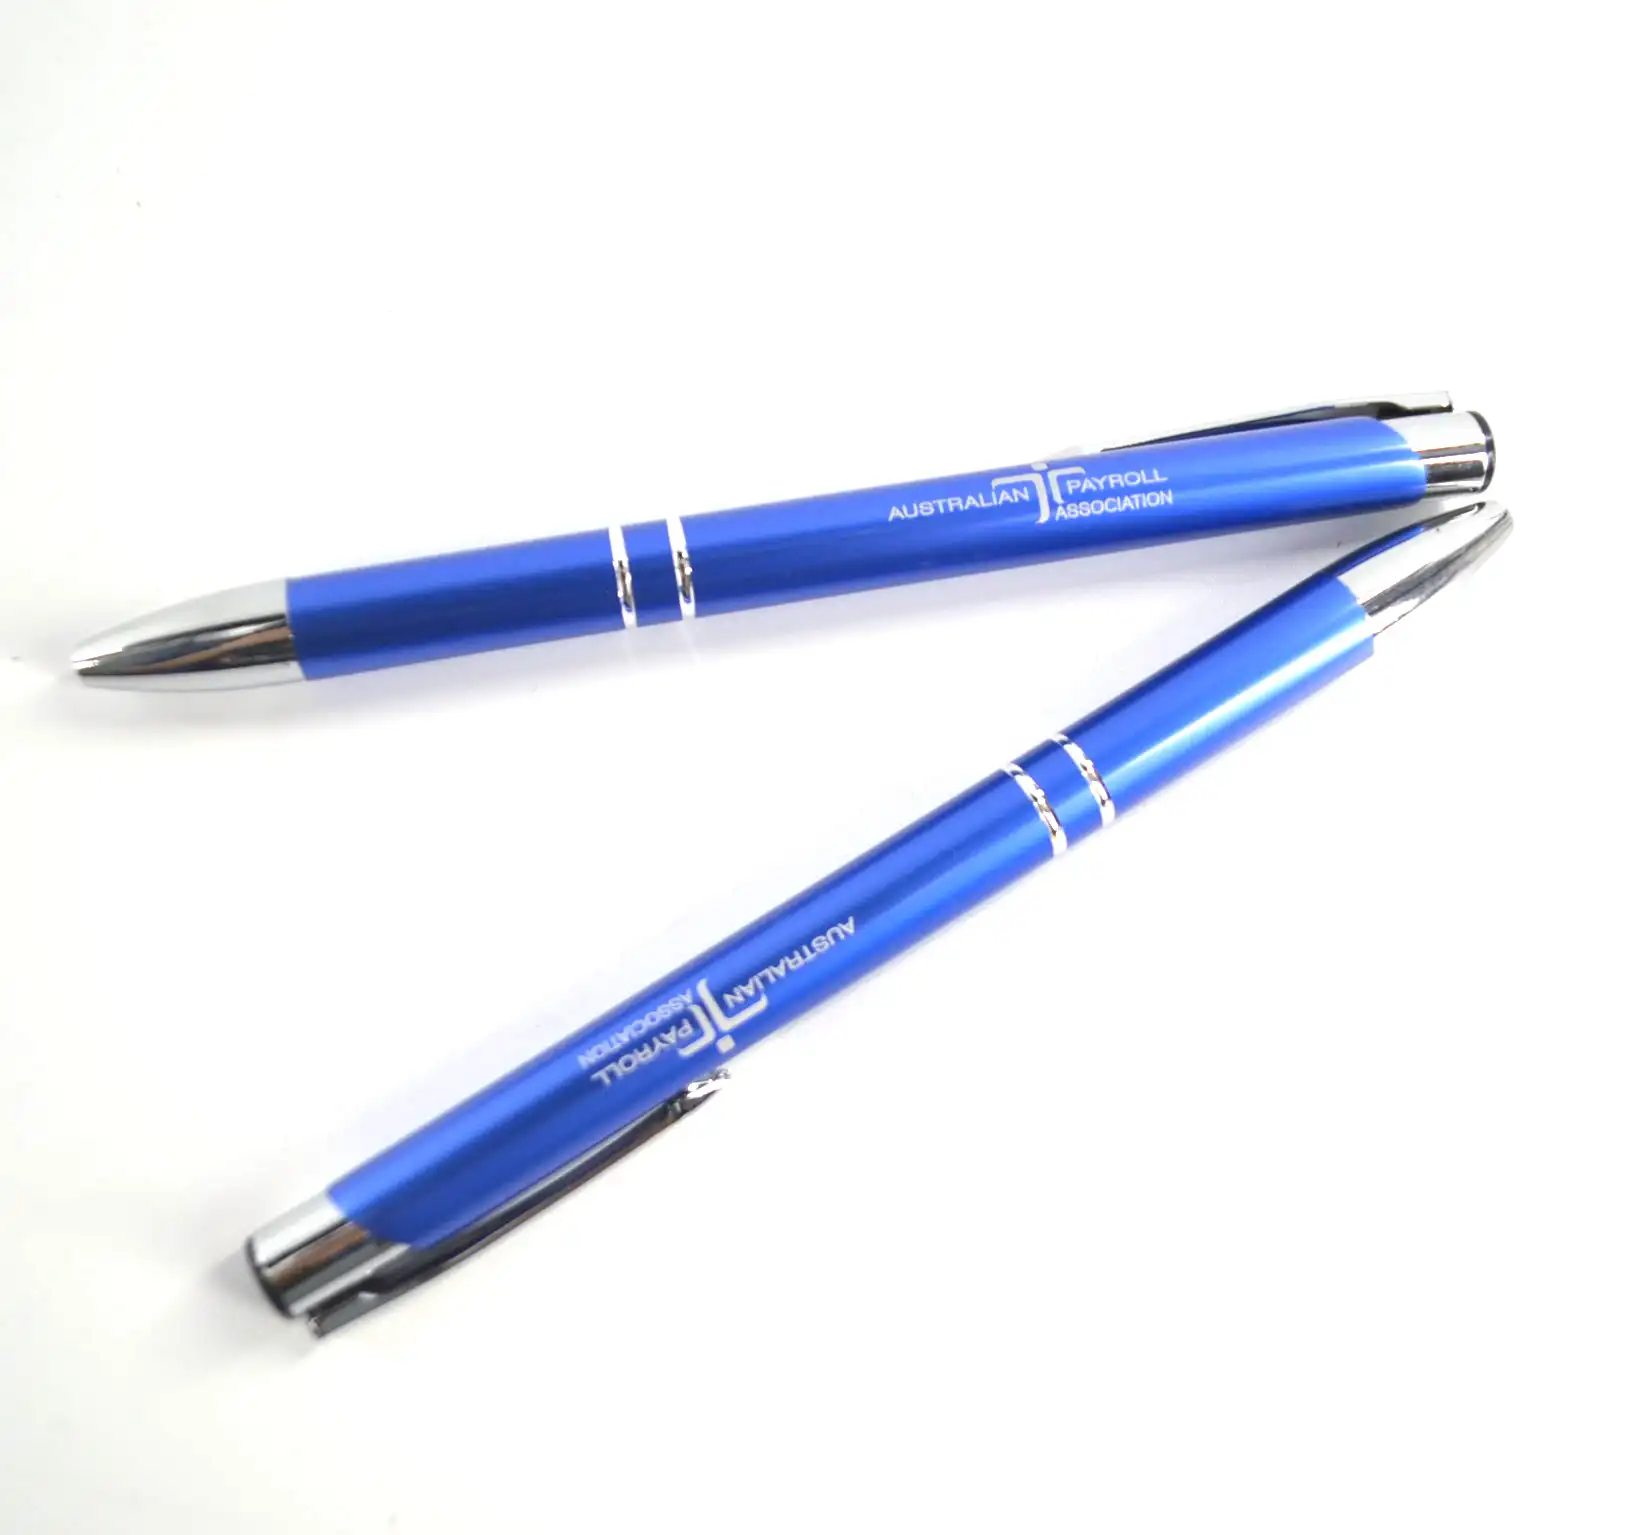 זול אלומיניום ballpen מותאם אישית צבעוני מתכת כדורי עט עם לייזר לוגו עבור קידום מכירות משרד שימוש